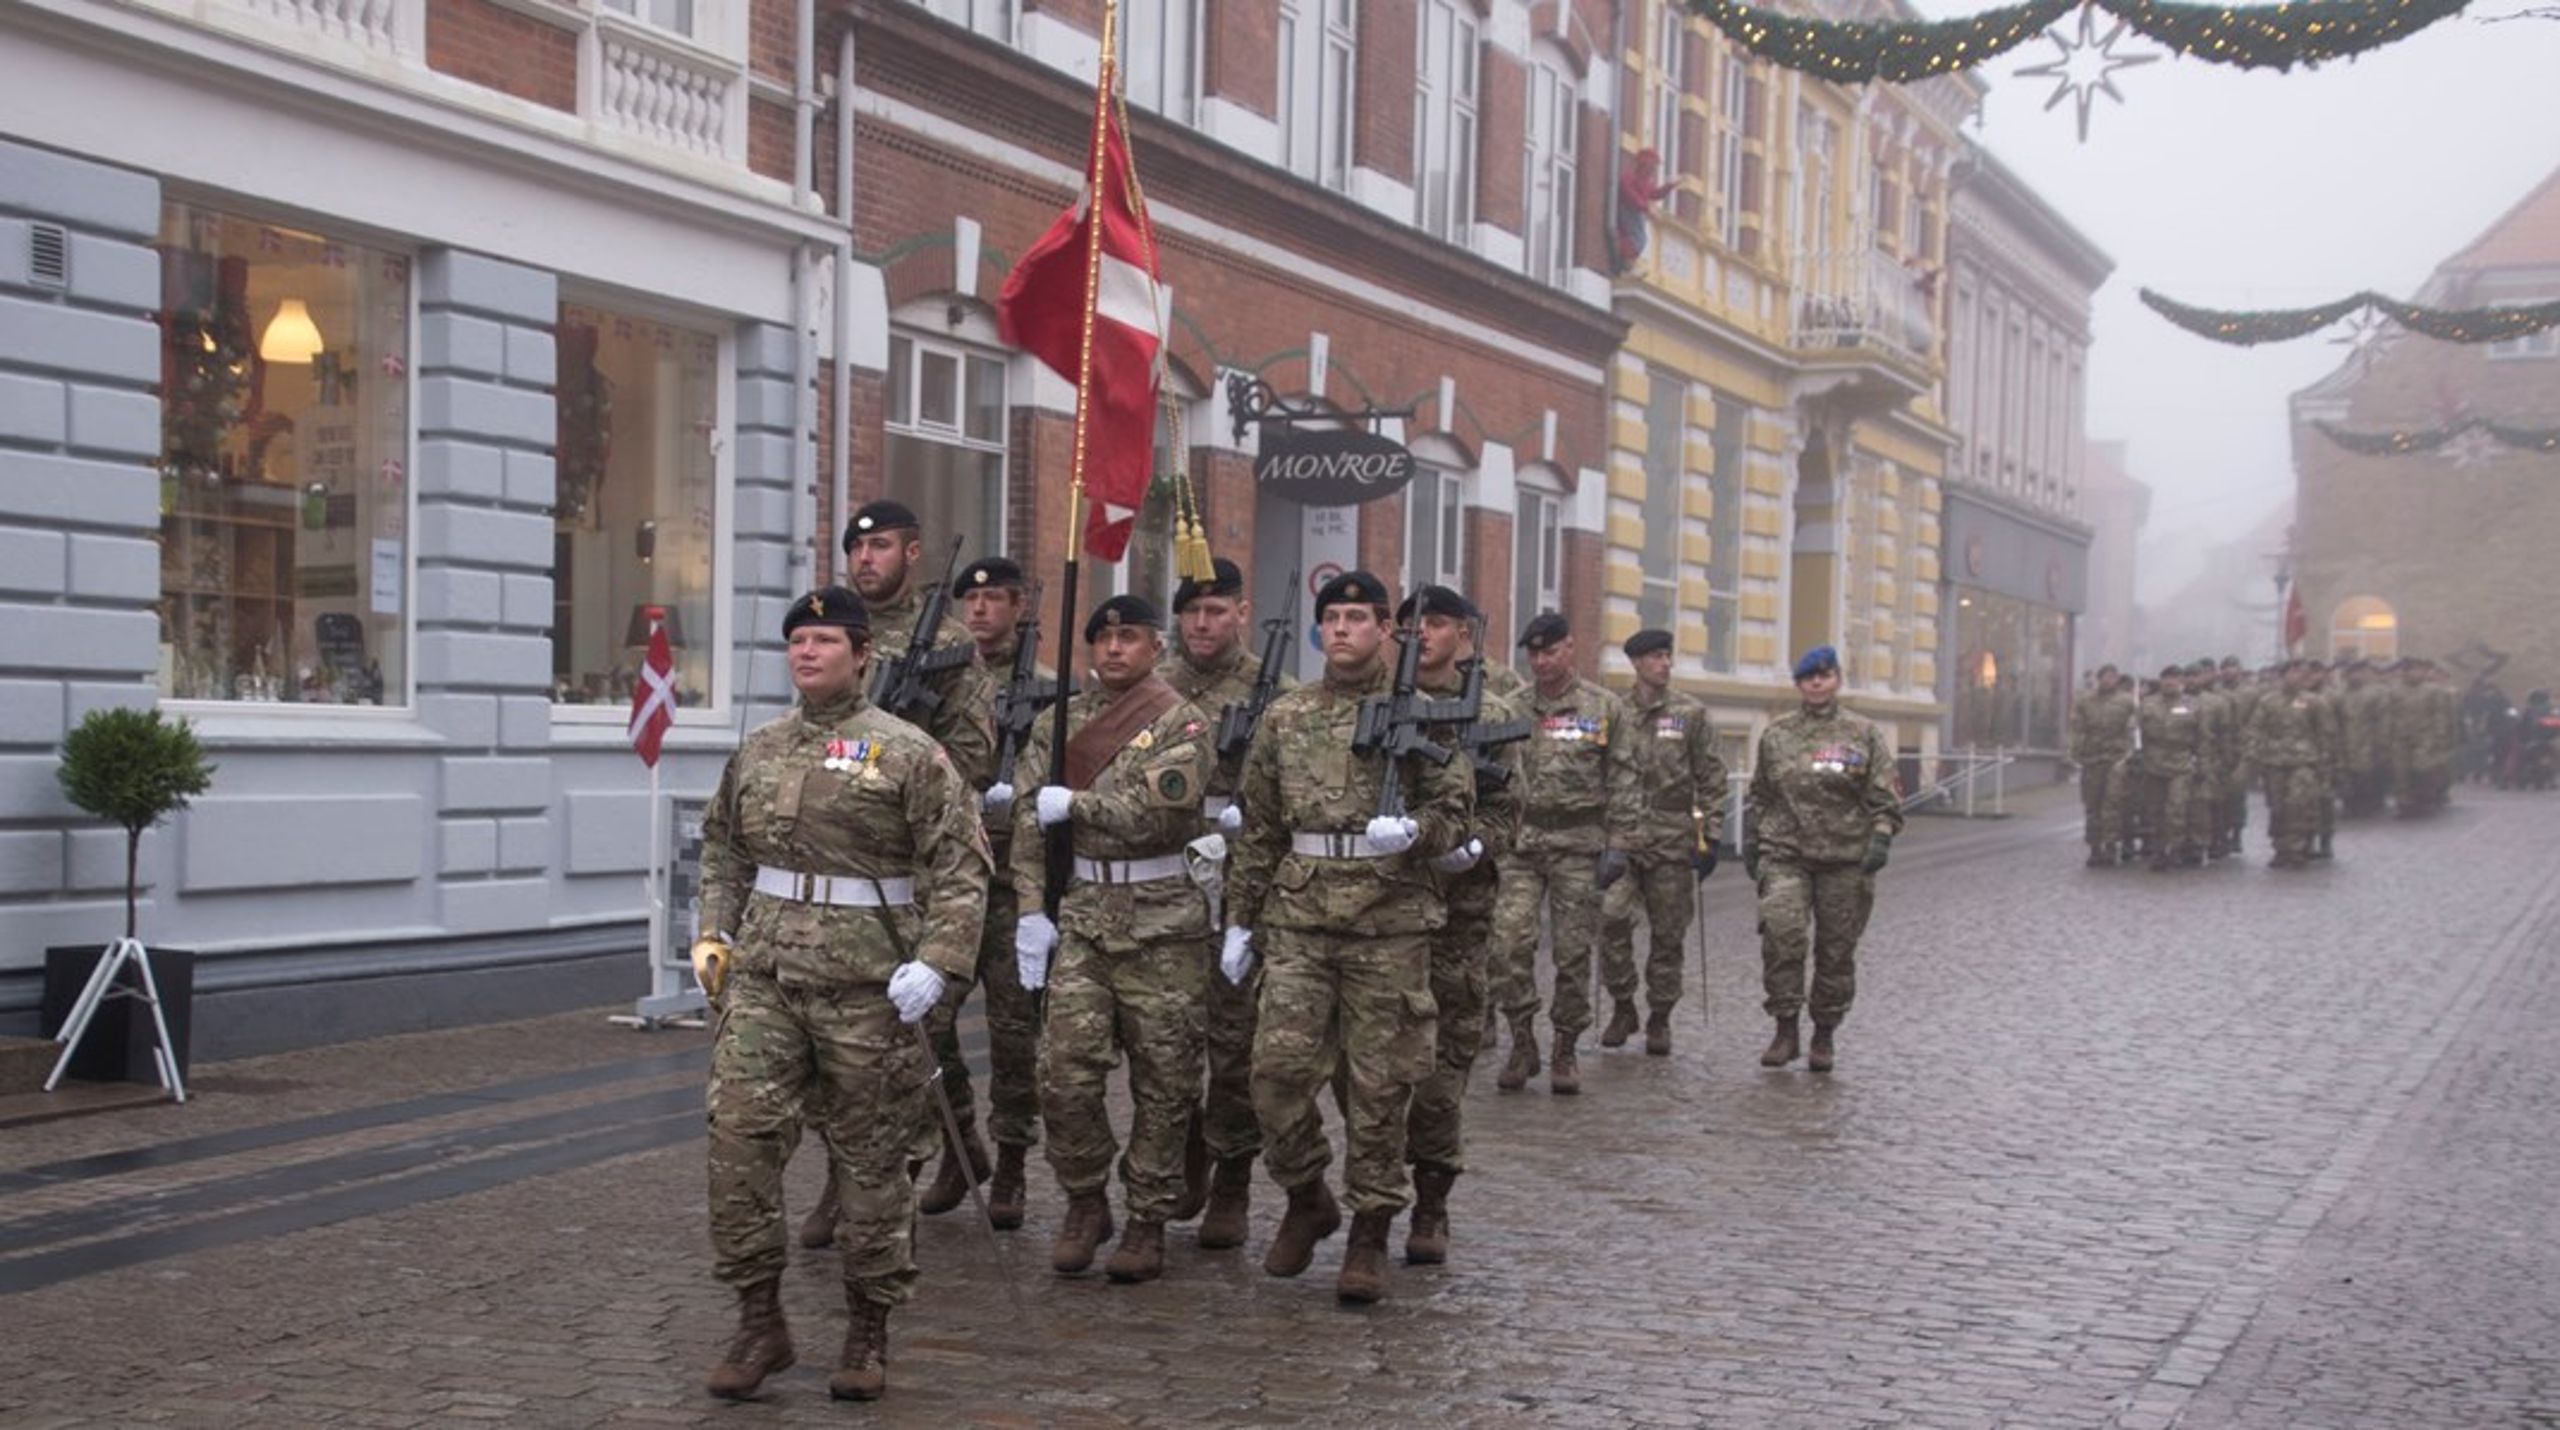 Soldater fra Hærens Sergentskole på vej til julegudstjeneste i Sct. Jacobi kirken i Varde i december 2017.